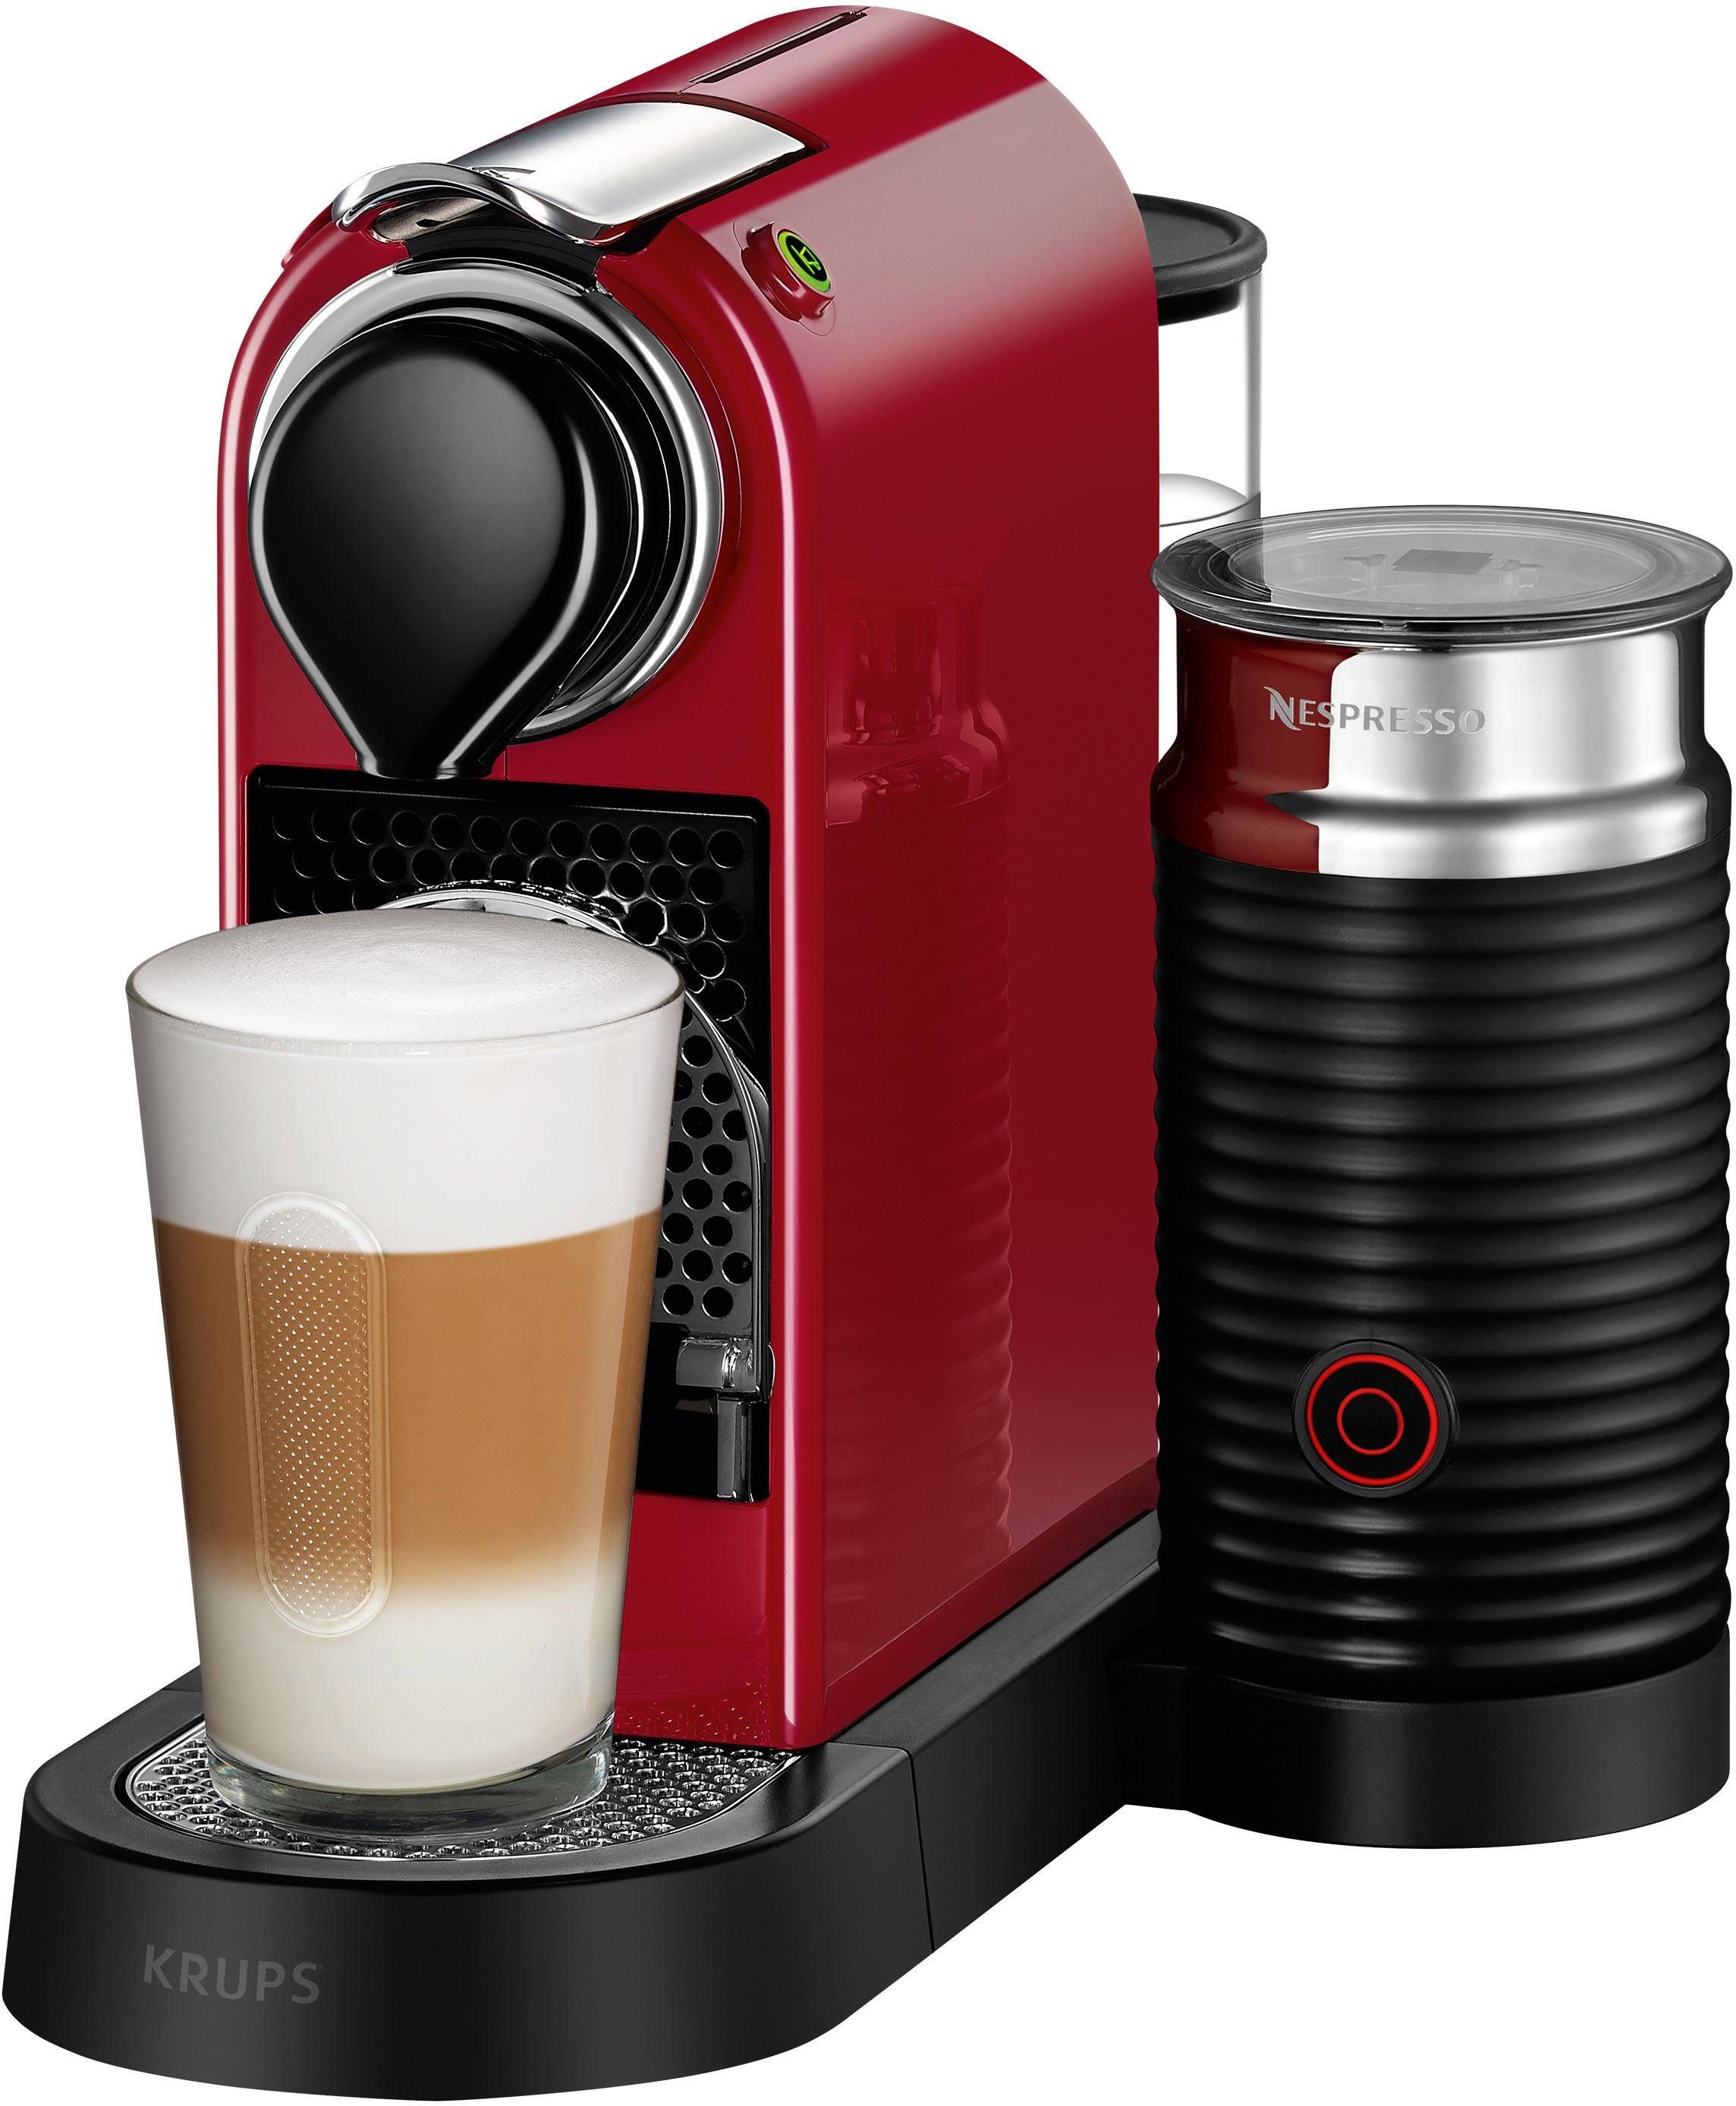 Nespresso Kapselmaschine New CitiZ & Milk XN7615 von Krups, Red, inkl.  Aeroccino Milchaufschäumer, Willkommenspaket mit 14 Kapseln online kaufen |  OTTO